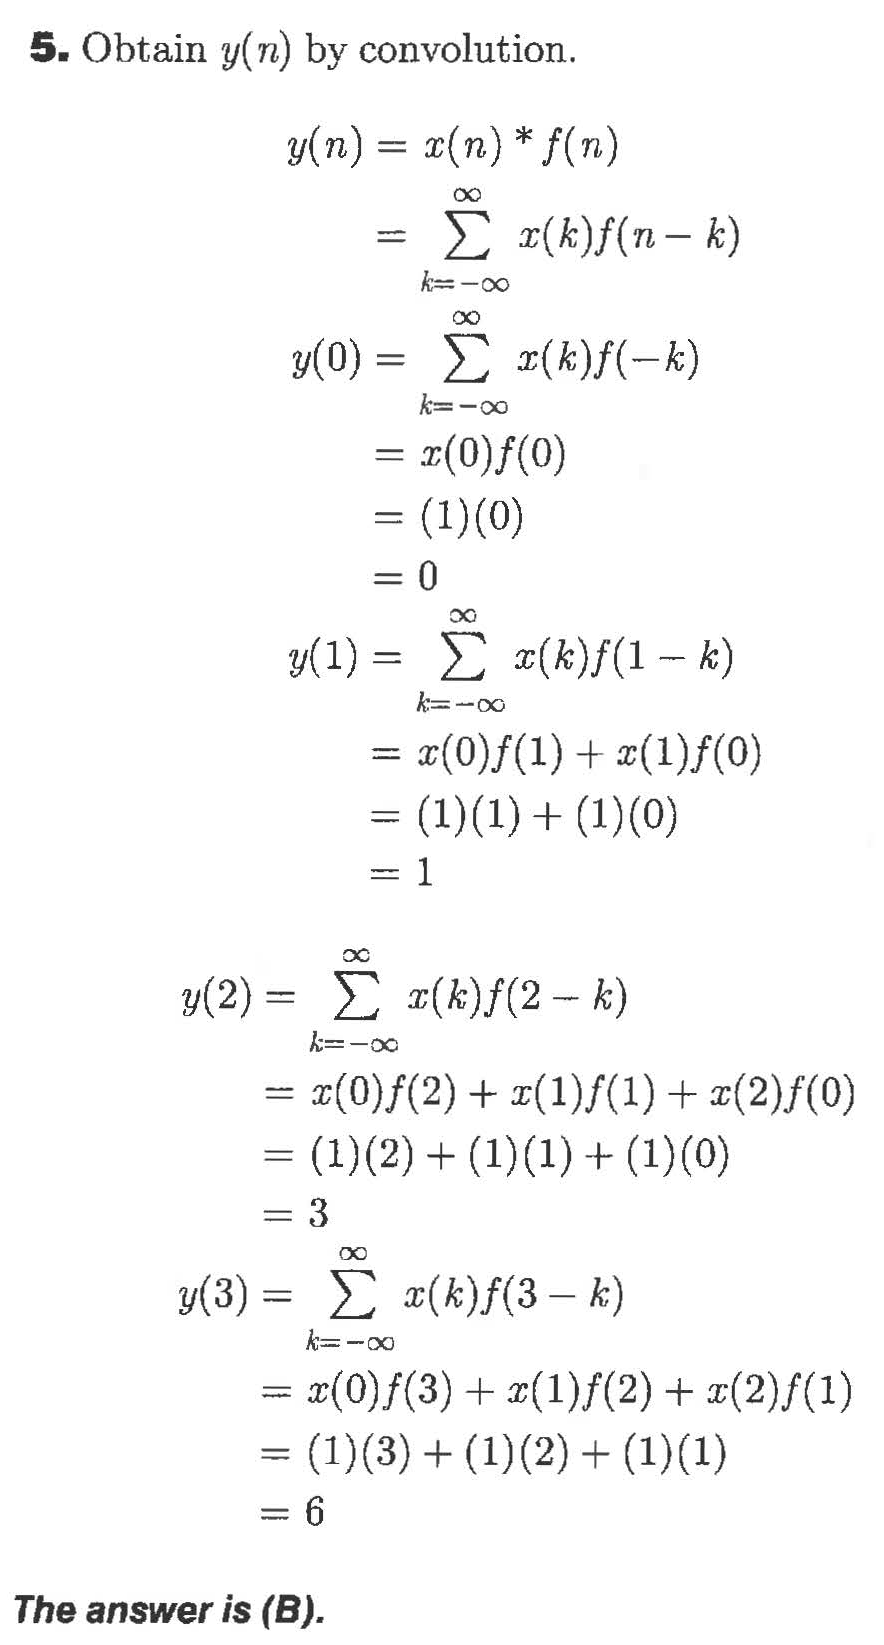 5. Obtain y(n) by convolution
y(n) x(n)* f(n)
Σ ( )f (π- t)
k oo
0)-Σ (k)f(-k)
y(0)
k-oo
= (0)f(0)
(1)(0)
= 0
(1) x(k)f(1- k)
x(0)f(1)(1)f(0)
(1)(1)(10)
= 1
(k)f(2 k)
y(2) =
(0)f(2)(1)(1)(2)f(0)
(1)(2)() (1)(0)
3
y(3)
x(k)f(3- k)
= x(0)f(3)(1)f(2)(2)f(1)
= (1)(3)(1)2)(1)(1)
= 6
The answer is (B).
